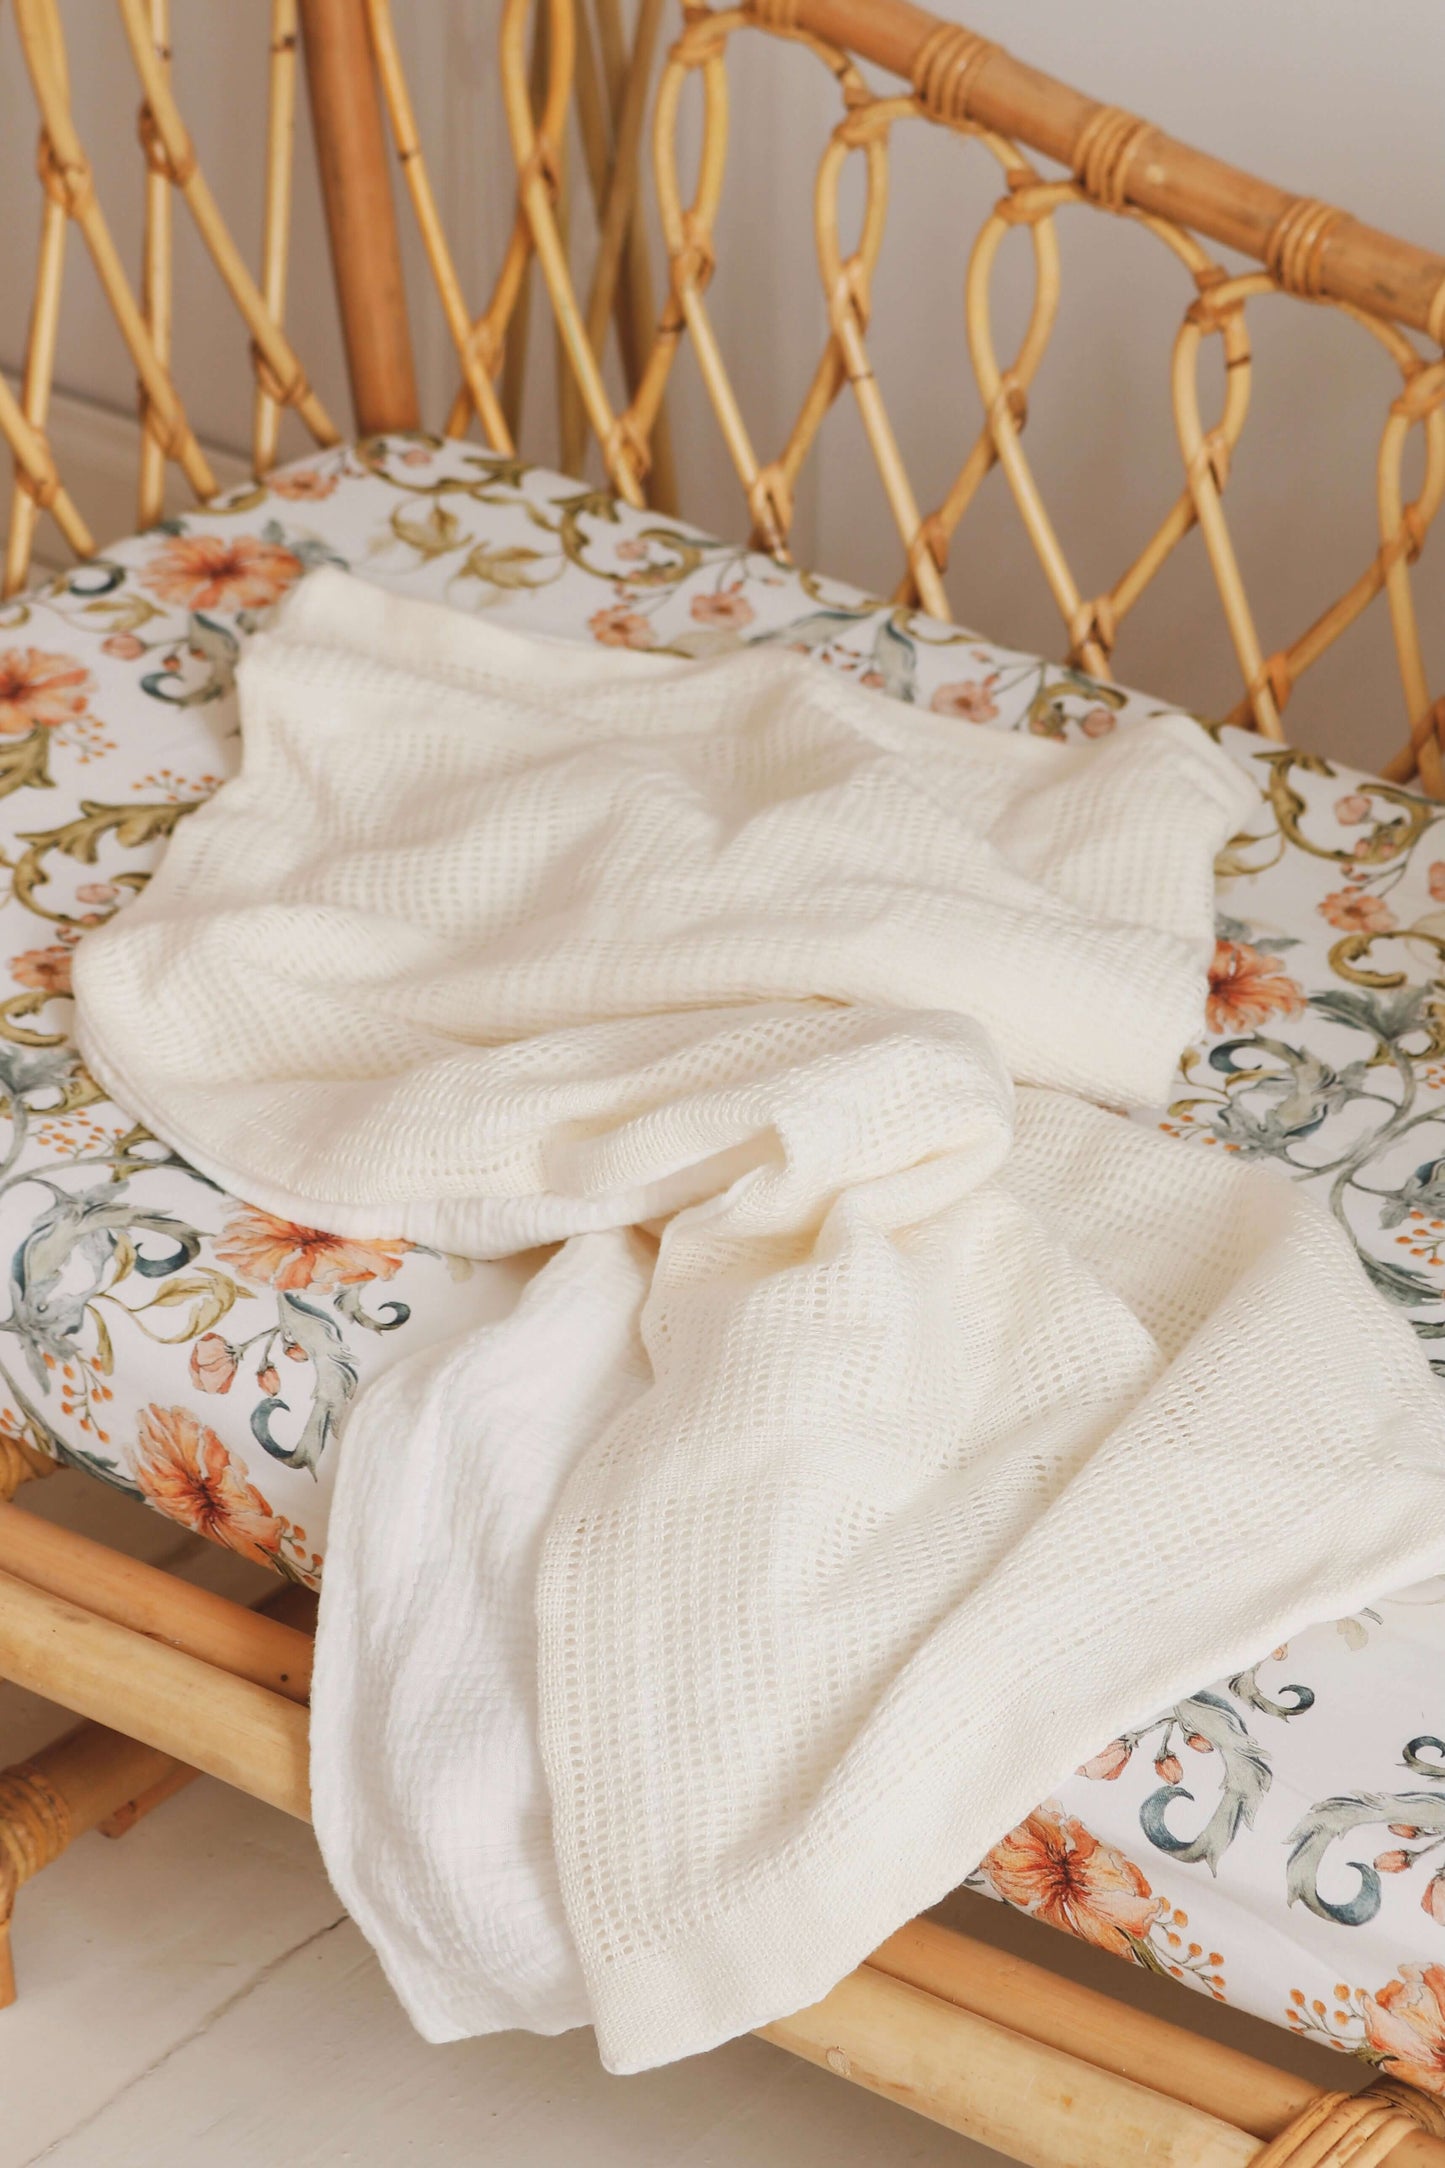 Matuu - Ecru - baby blanket, crib blanket